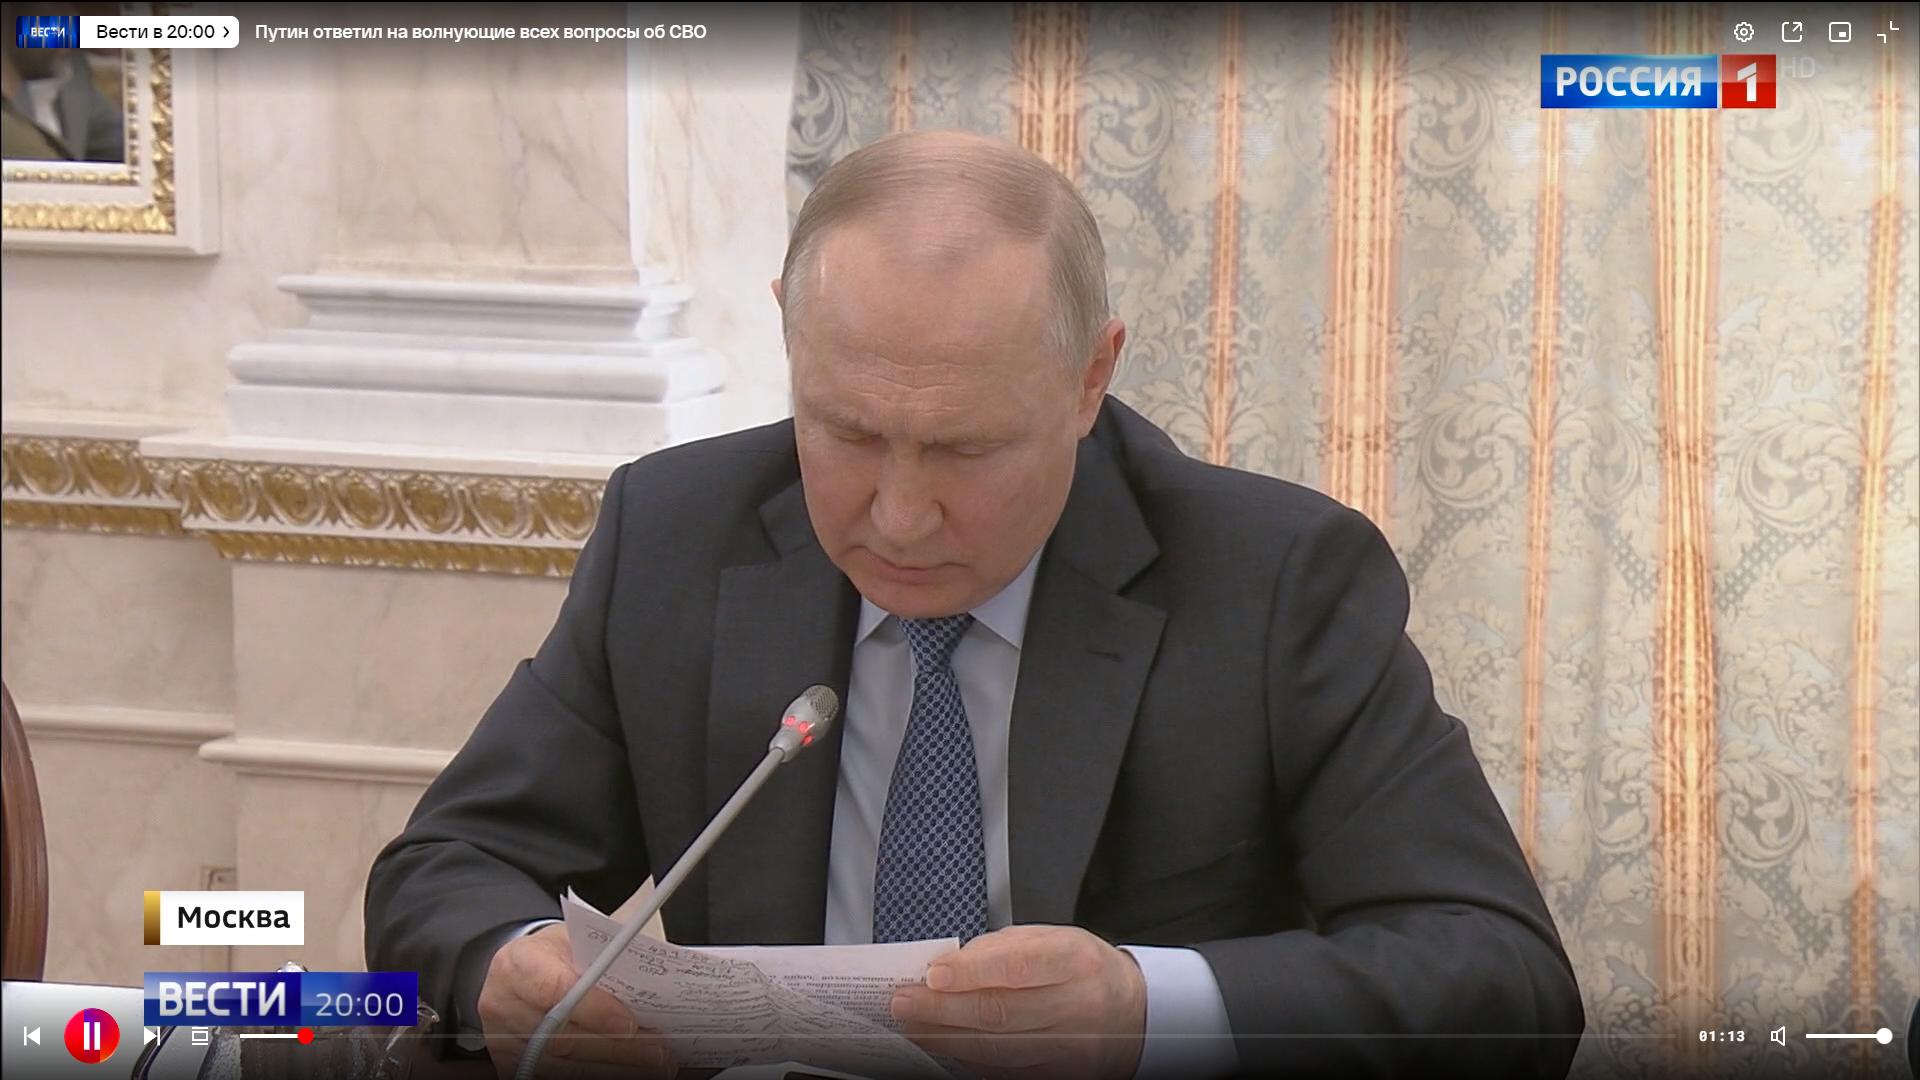 Putin (łusiejacy starszy mezczyzna) zagląda do notatek. W tle - marmury